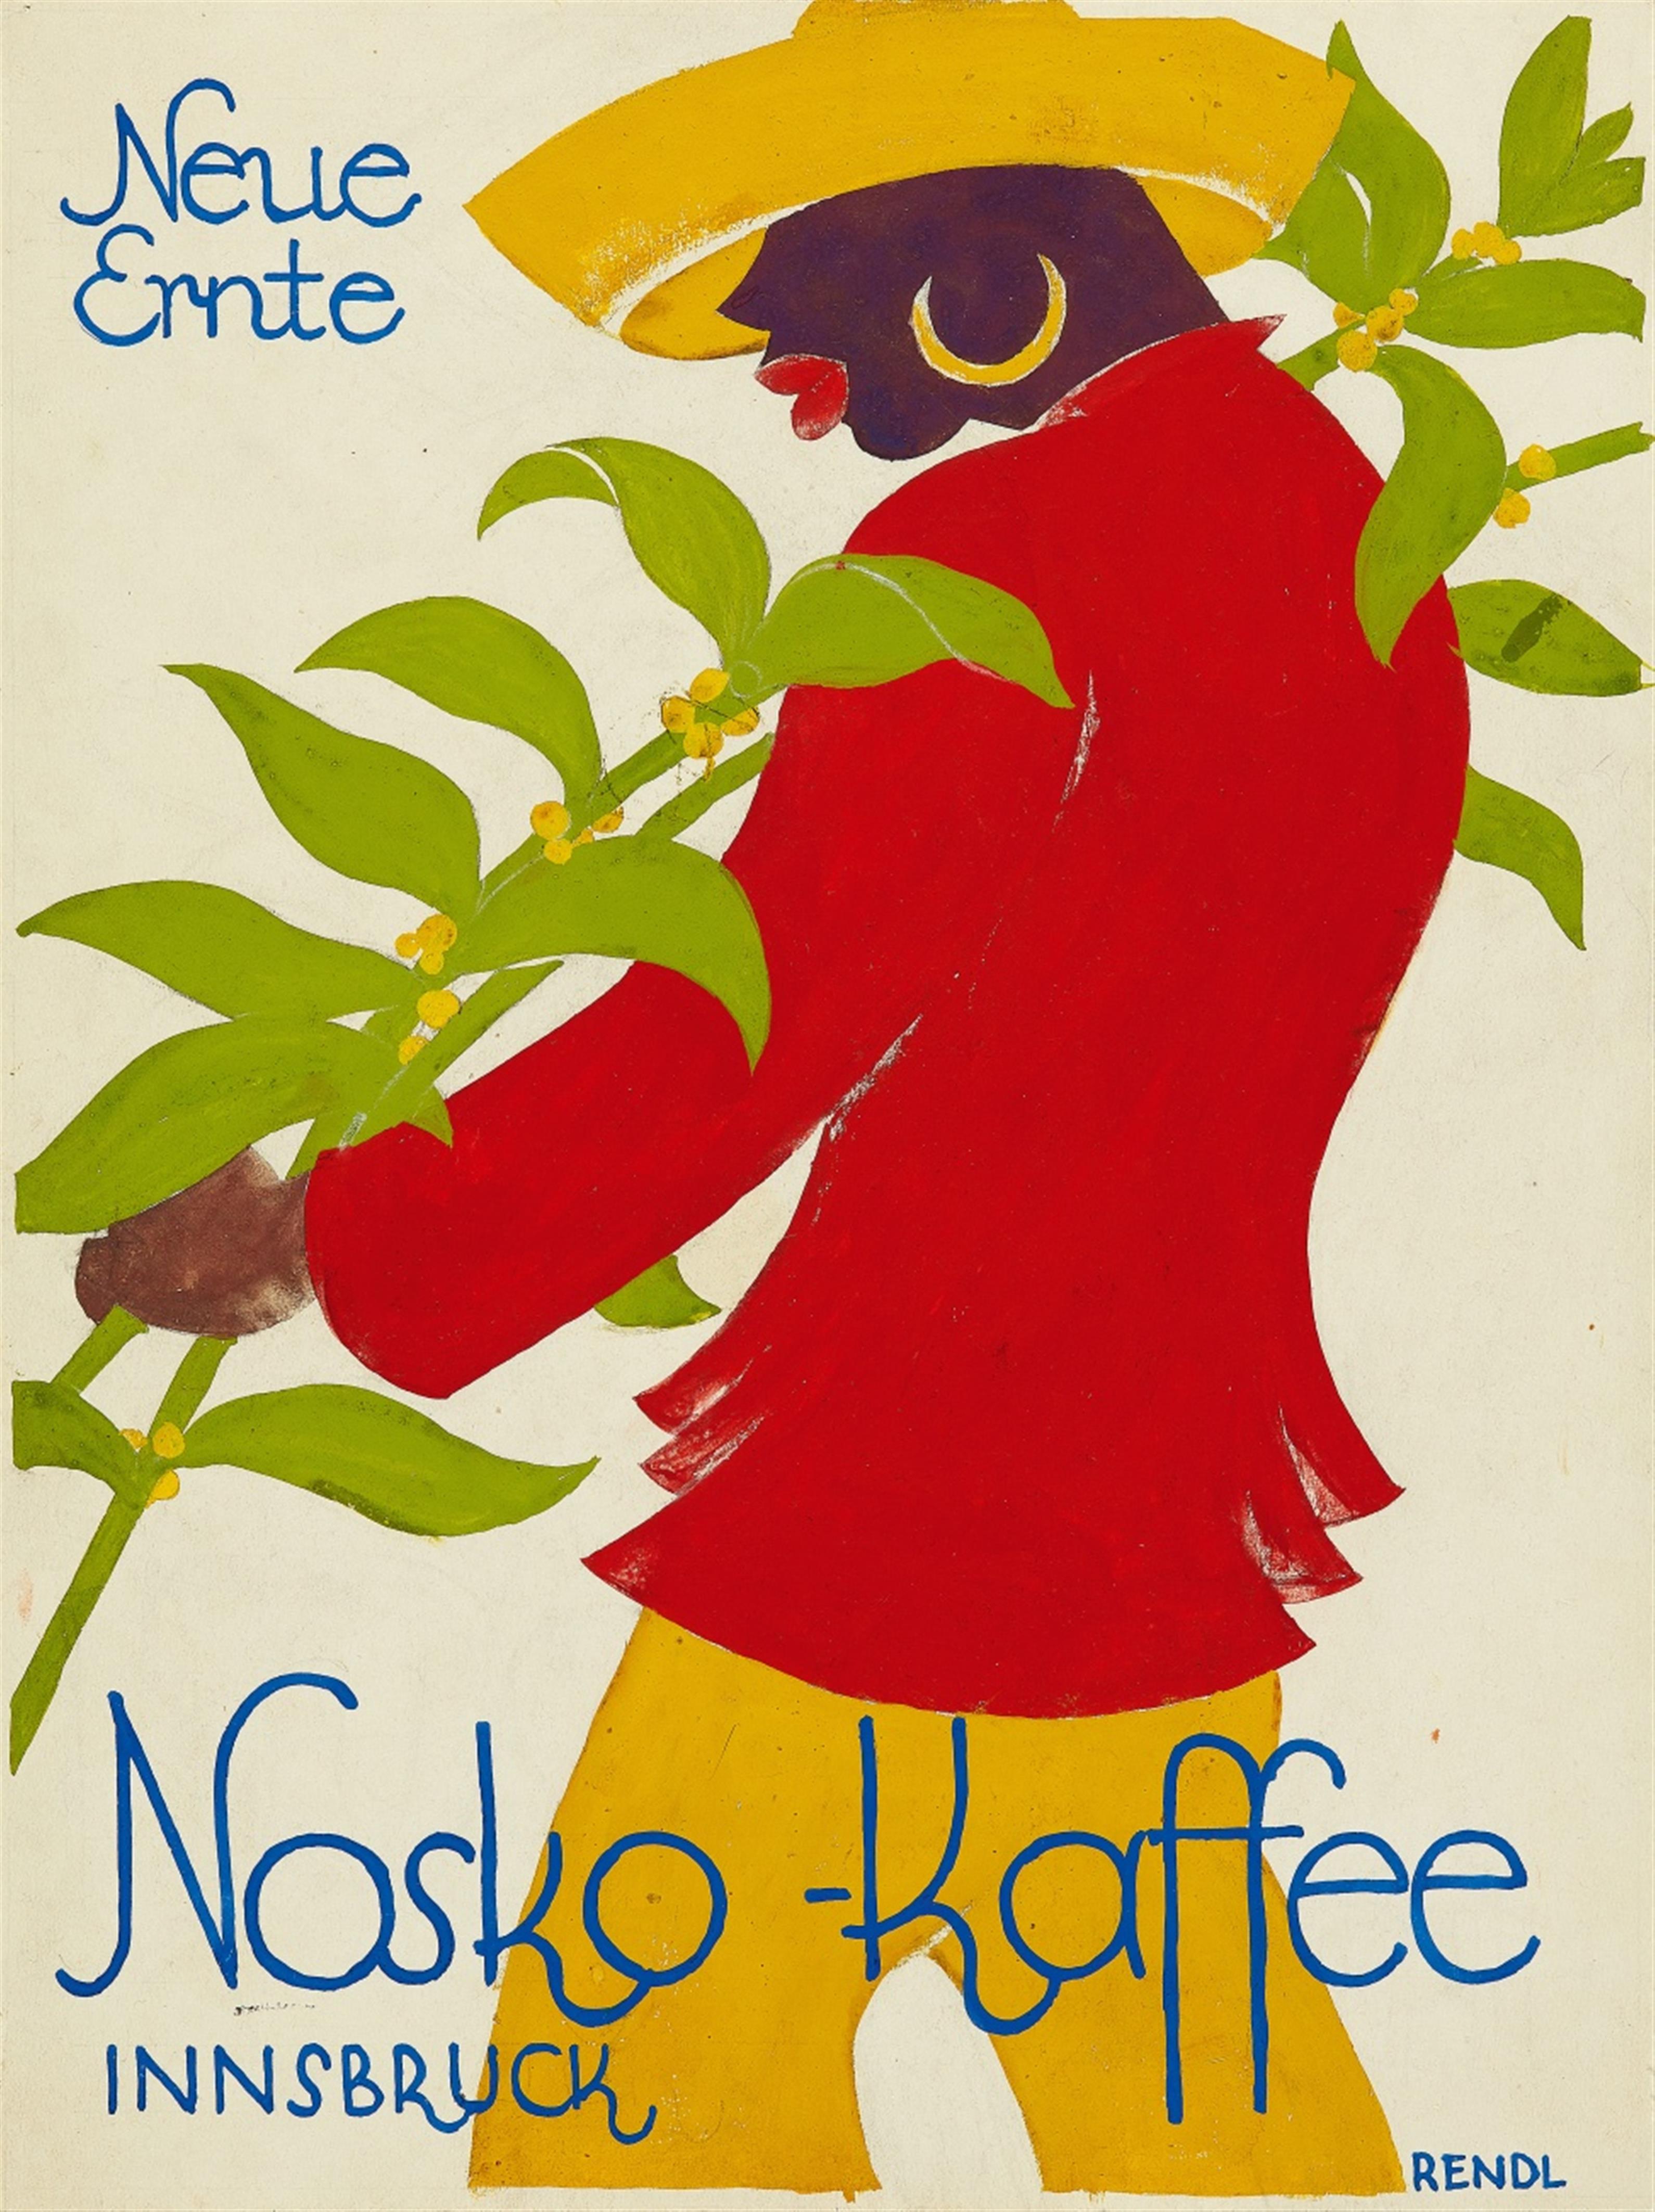 Neue Ernte Nosko-Kaffee, Innsbruck - image-1